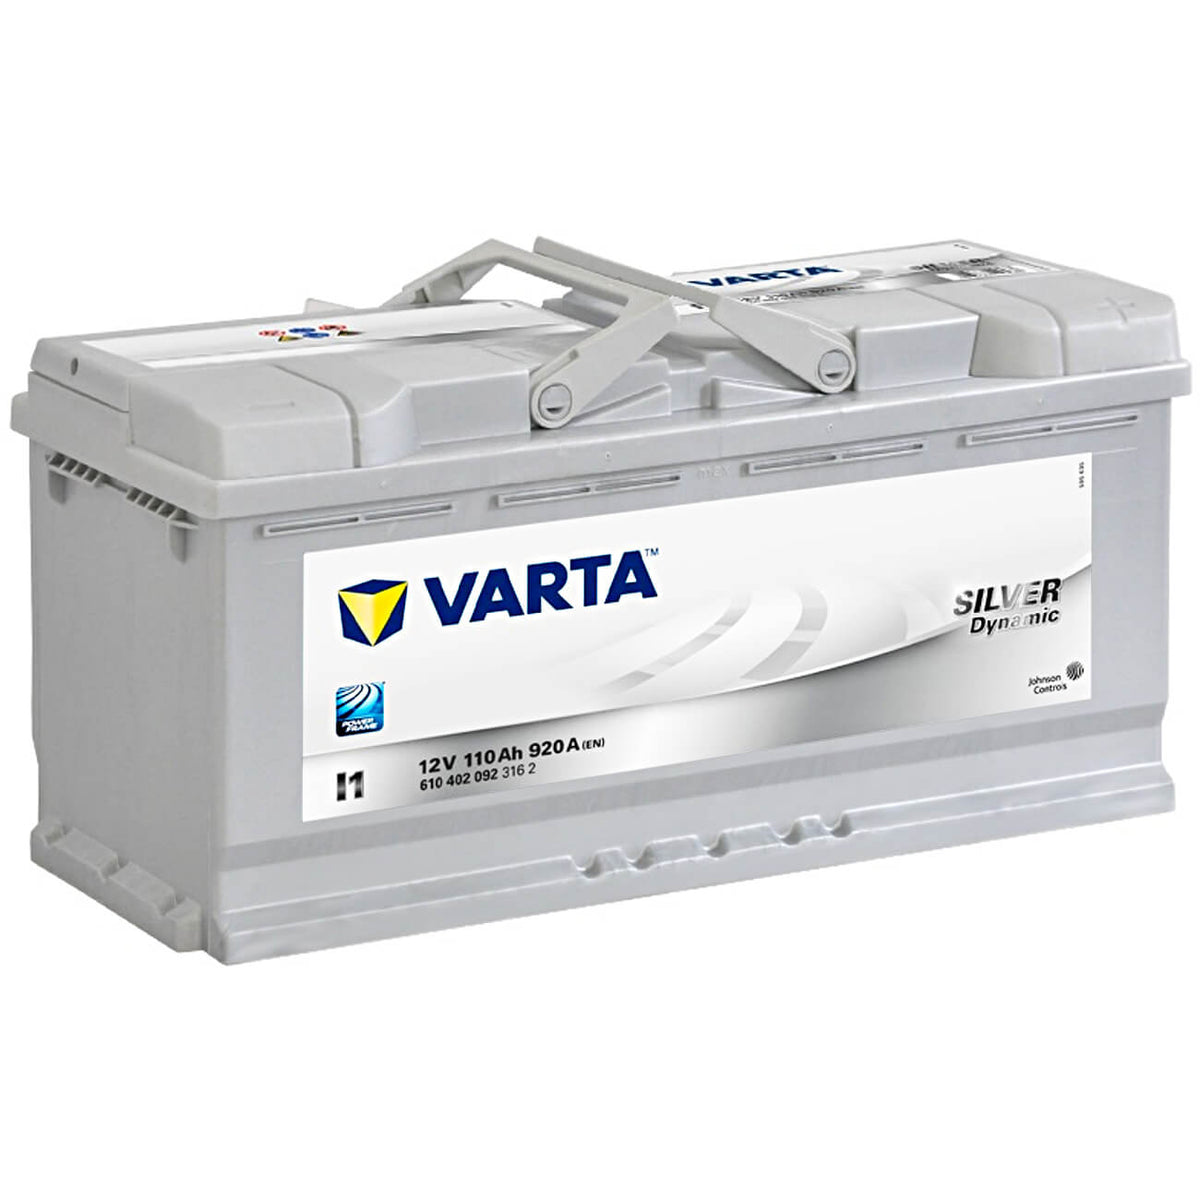 Varta I1 Silver Dynamic 12V 110Ah 920A/EN